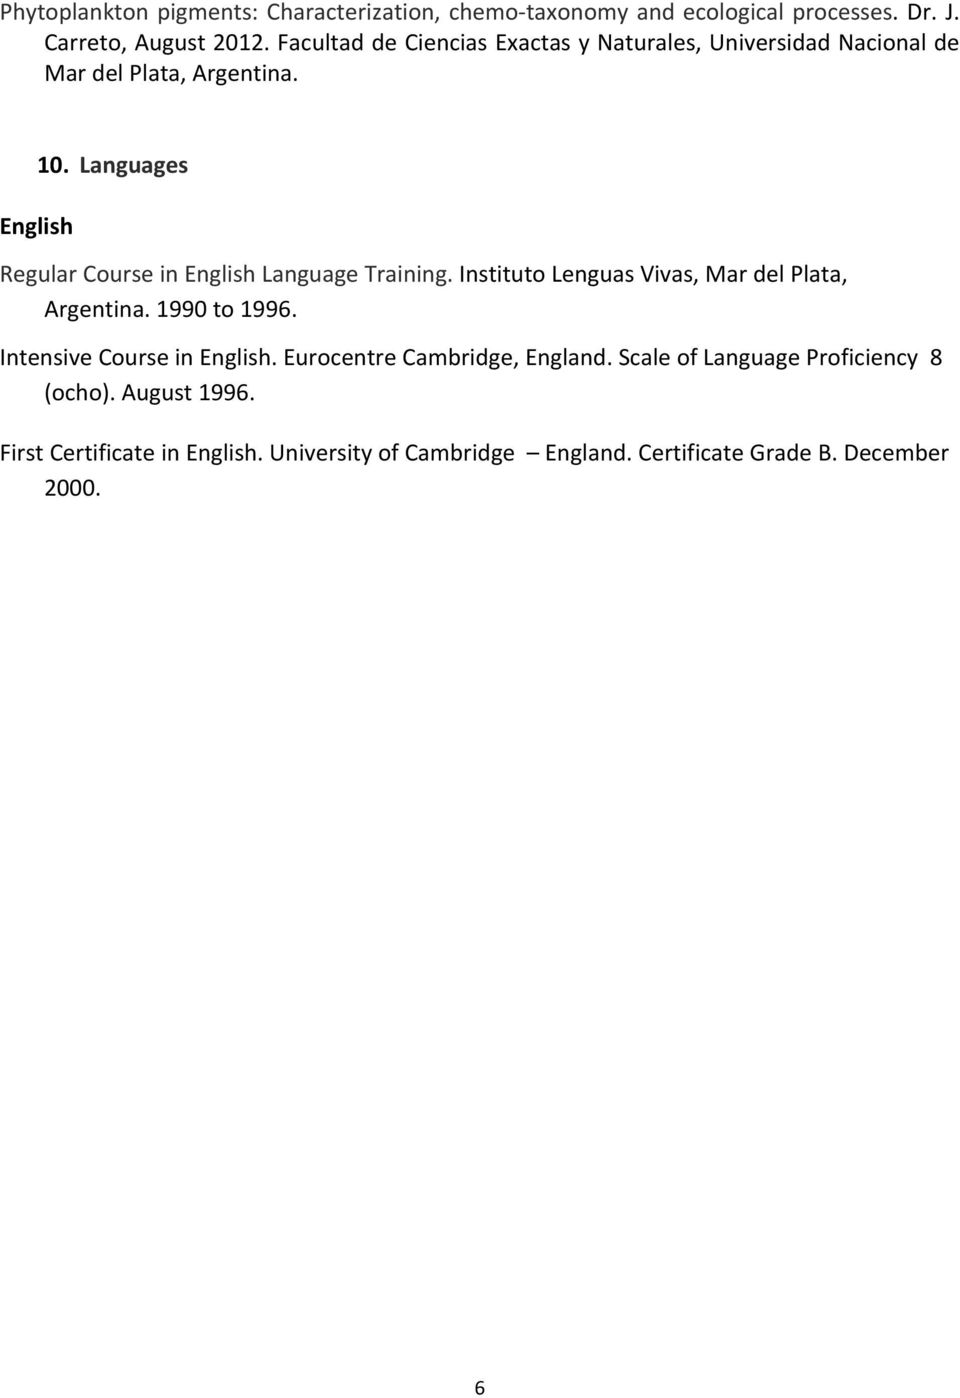 Languages Regular Course in English Language Training. Instituto Lenguas Vivas, Mar del Plata, Argentina. 1990 to 1996.